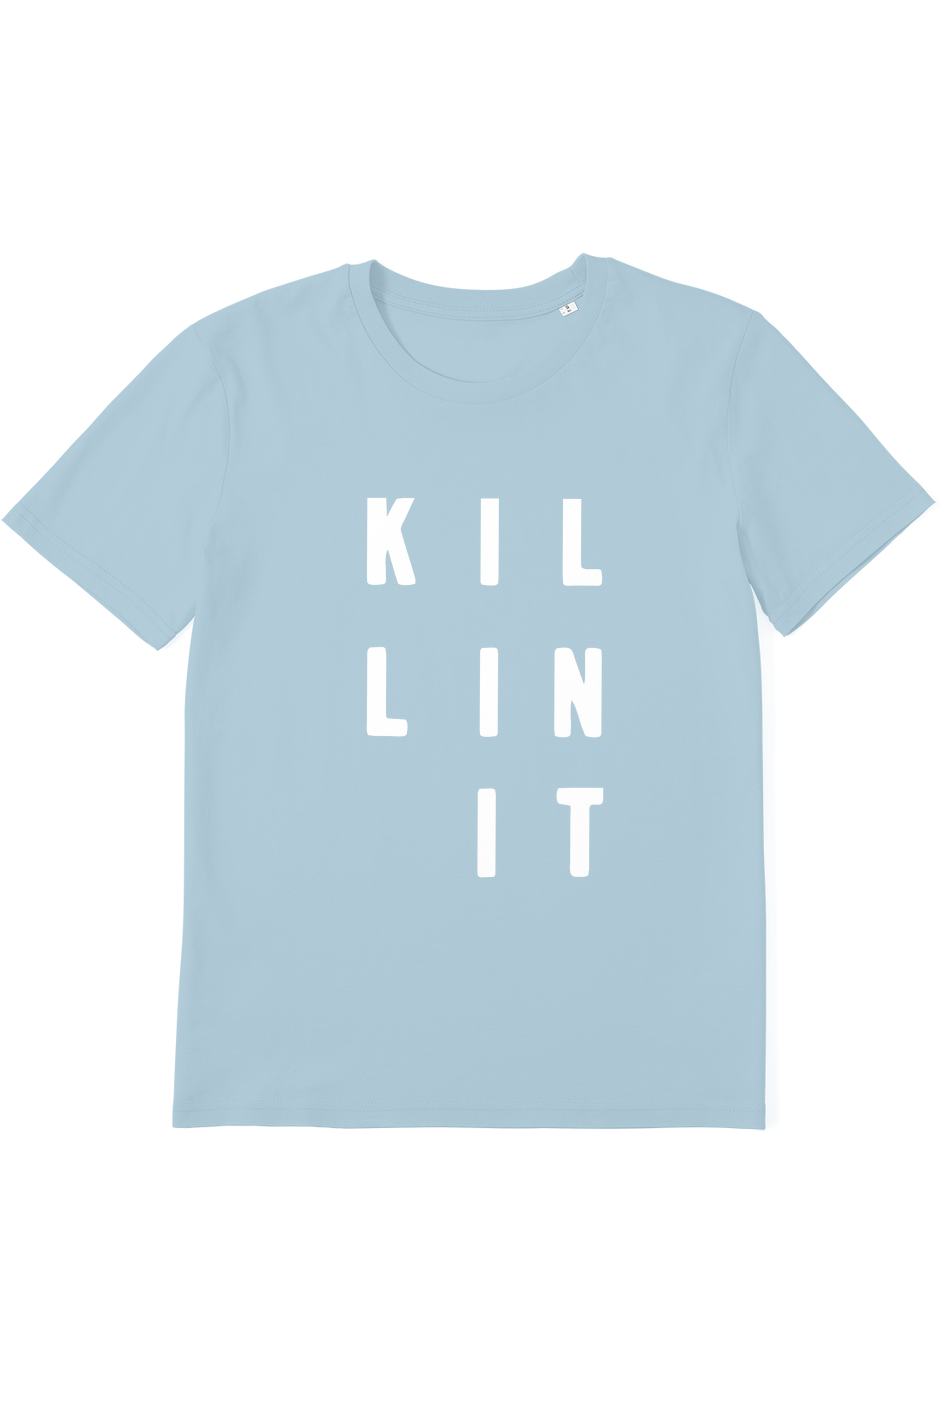 Killin It Organic T-Shirt vegan, sustainable, organic streetwear, - TRVTH ORGANIC CLOTHING